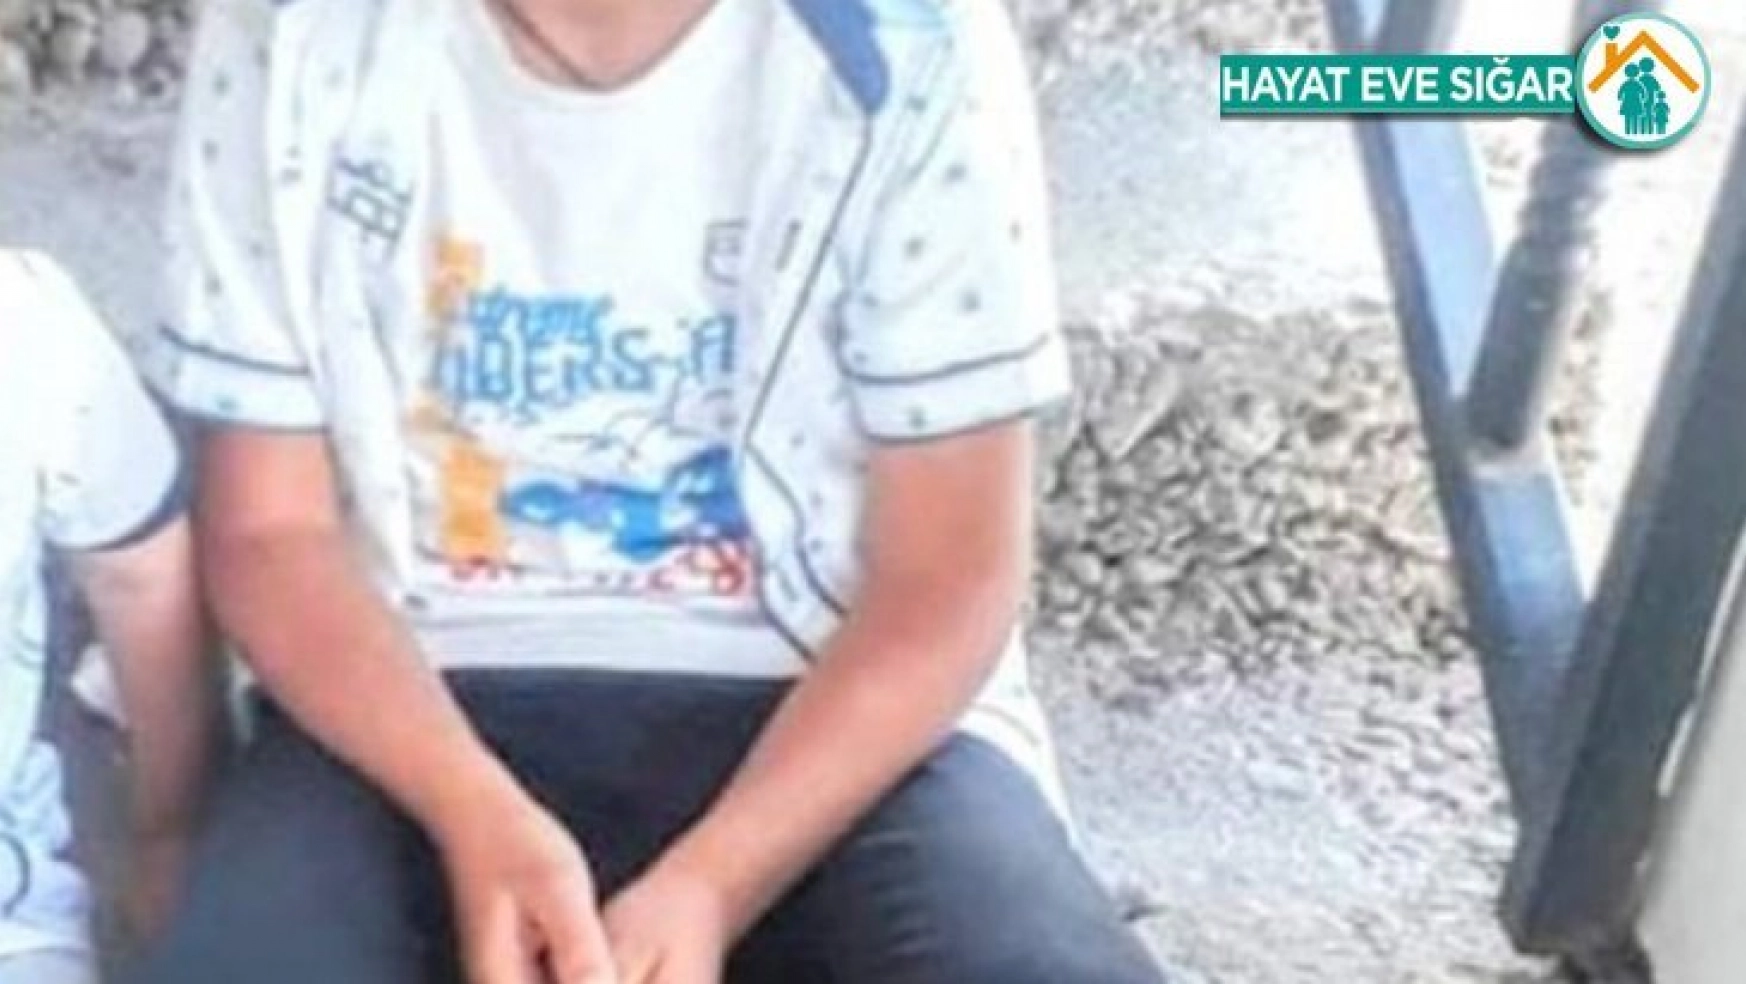 12 yaşındaki çocuk, serinlemek için girdiği derede boğuldu